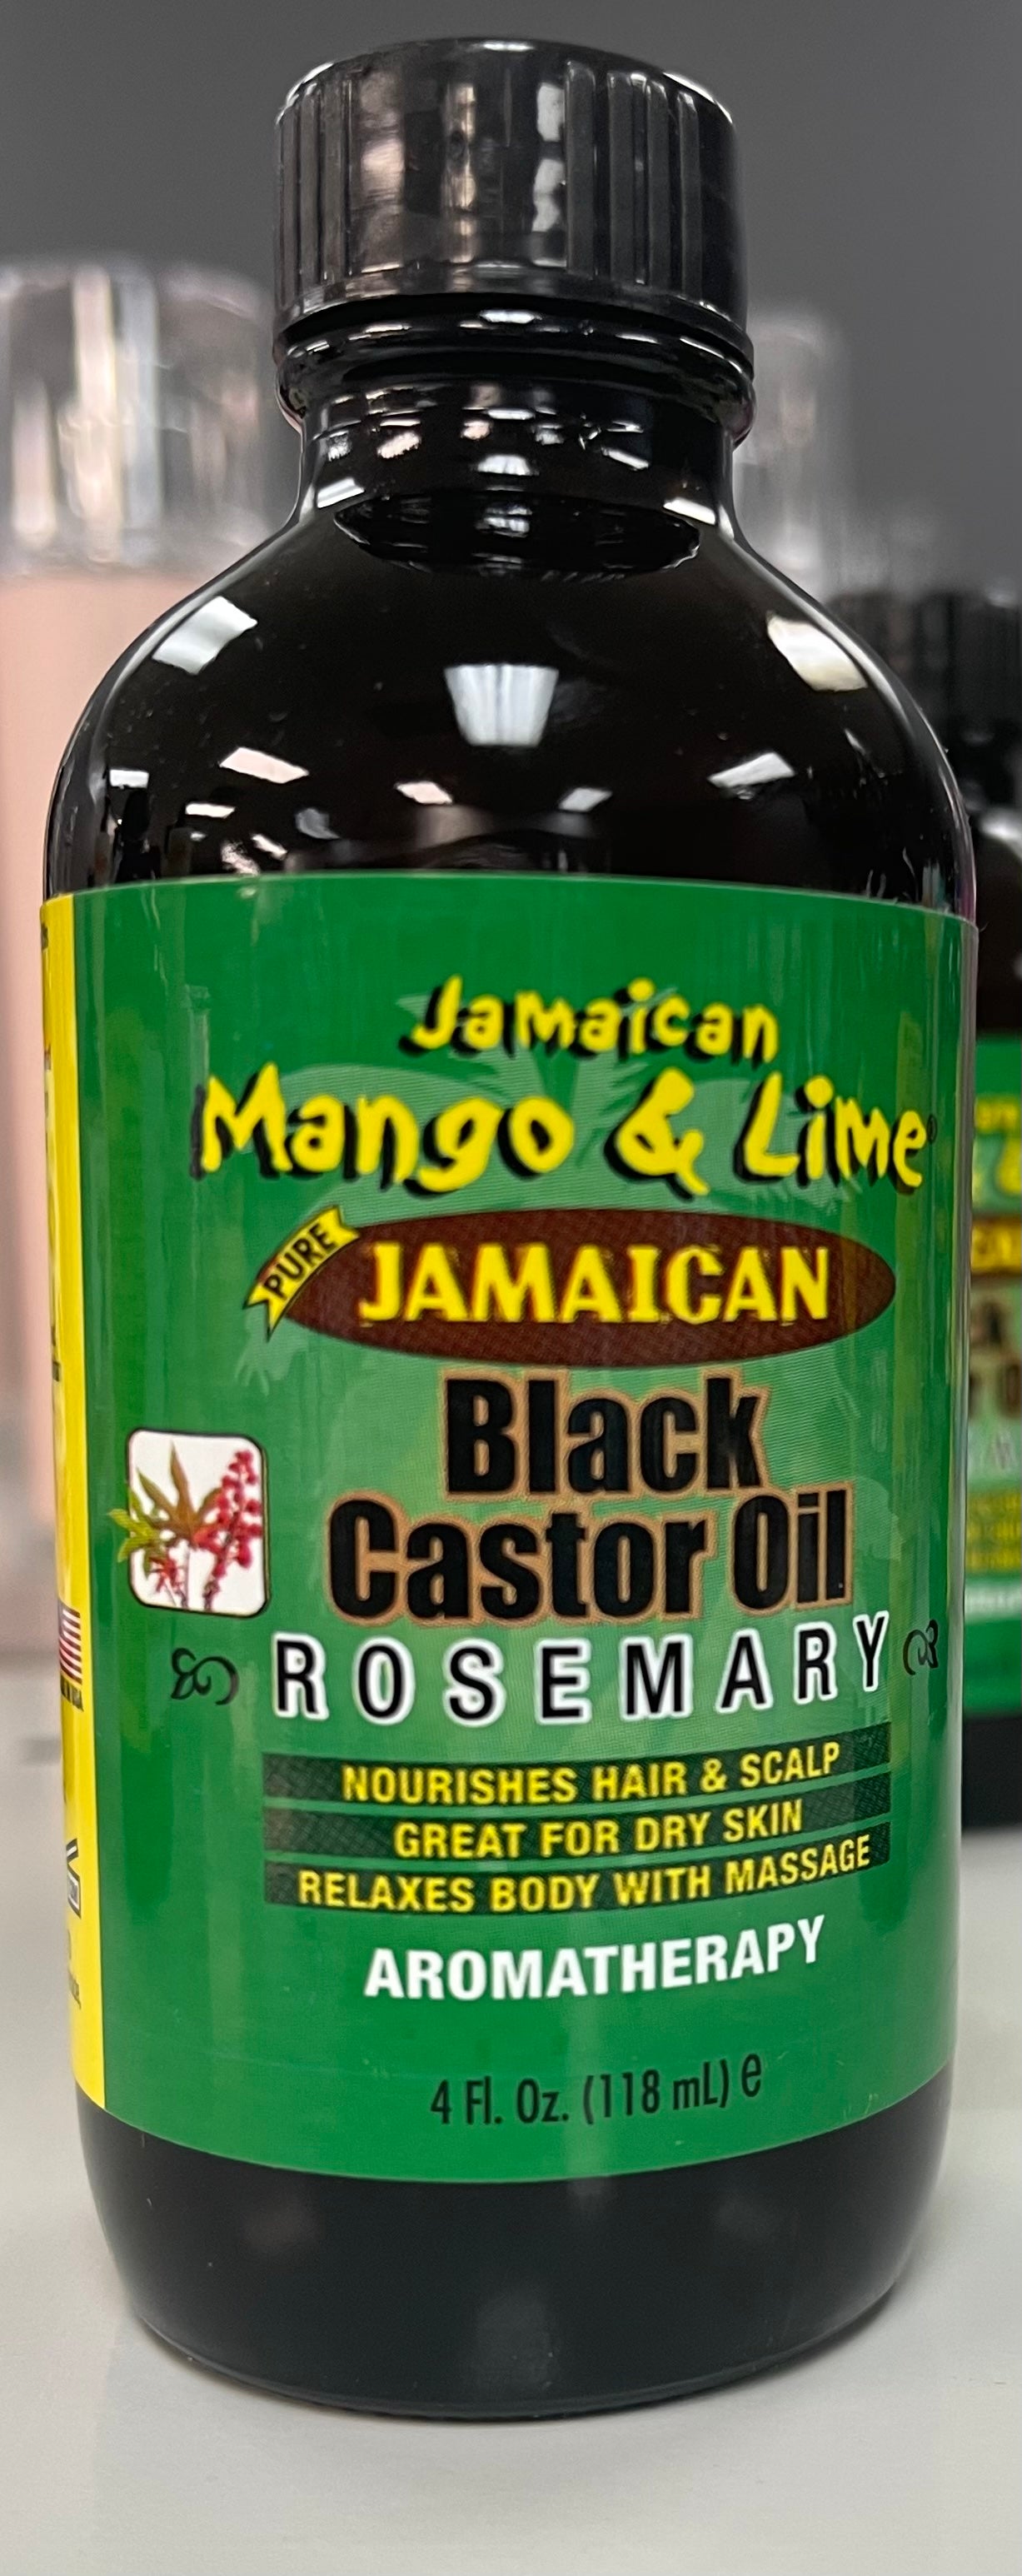 Jamaican Mango & Lime Jamaican Black Castor Oil Rosemary